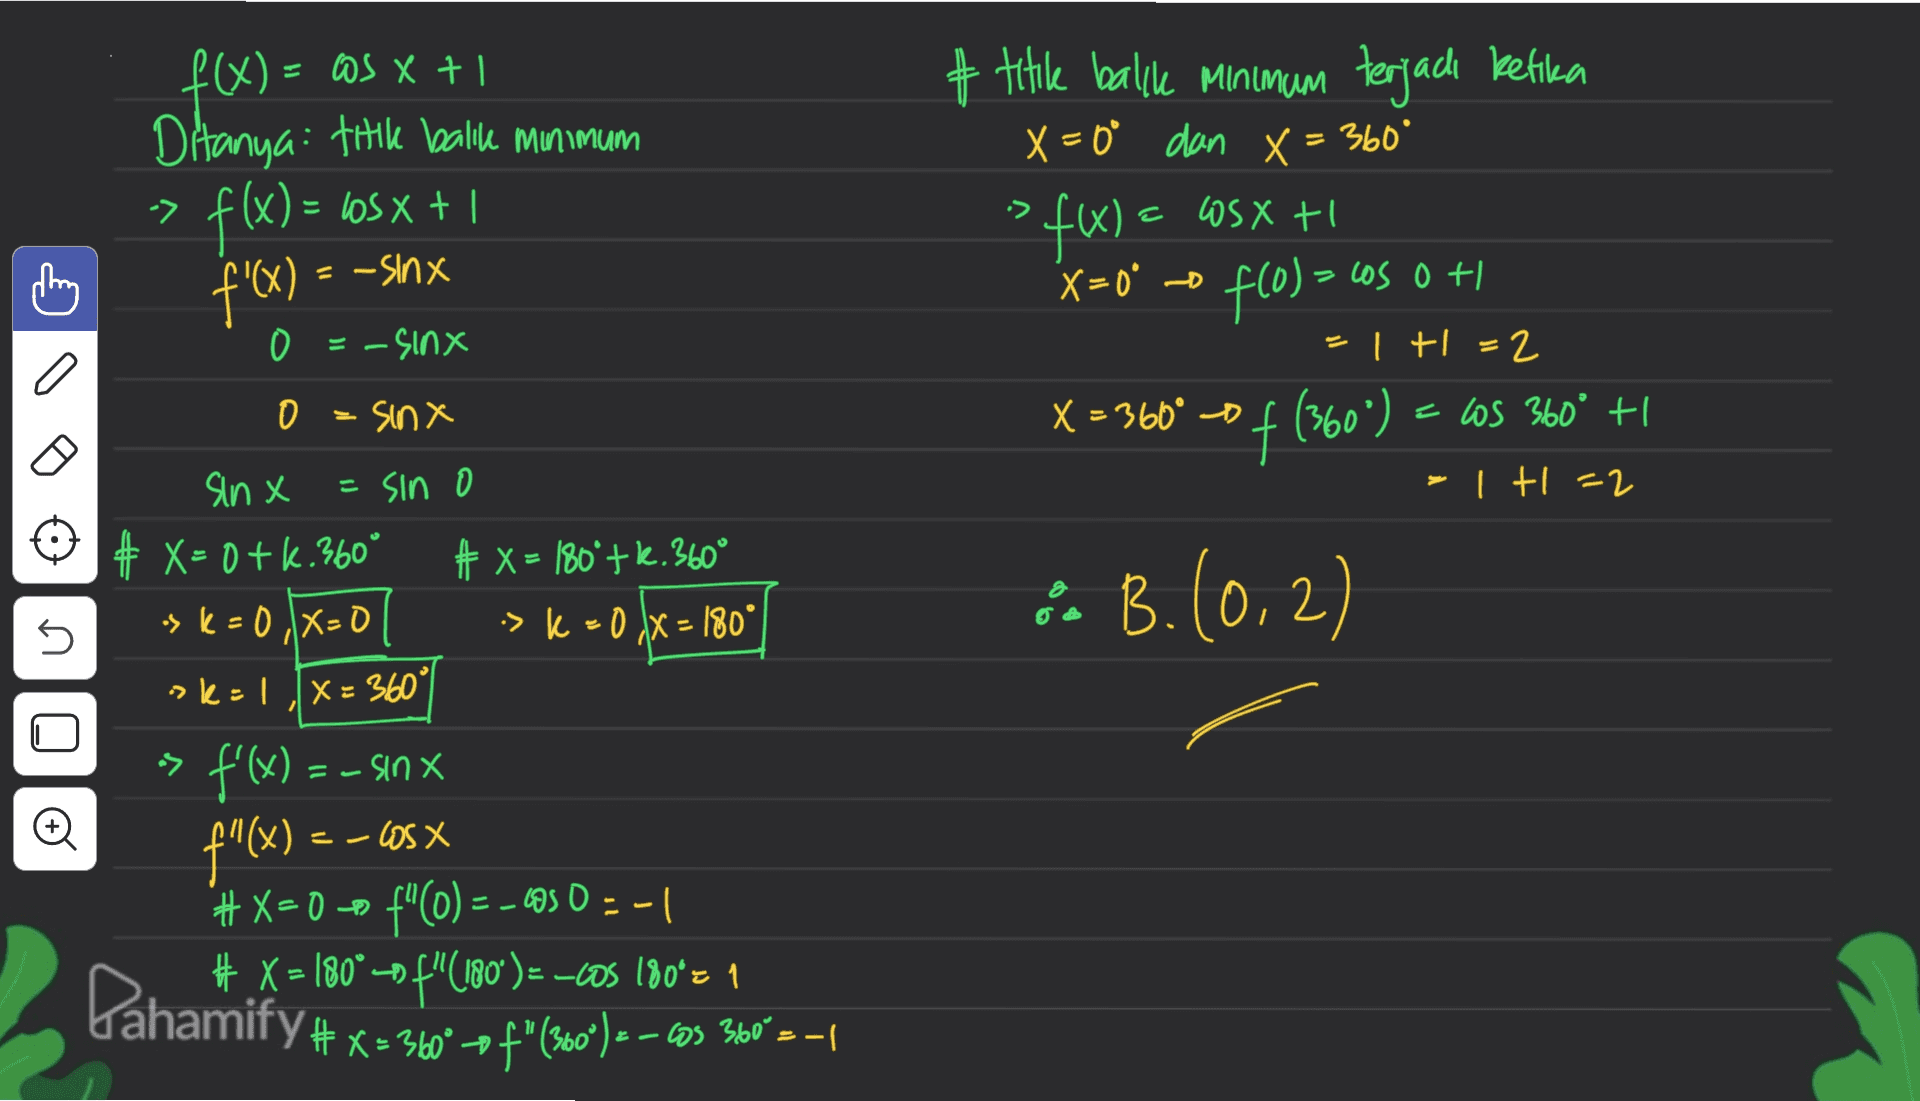 1 + x 5€ = (x)t # title balke Minimum terjadi ketika X=0° dan X = 360° SfW) X=0° o fcol = cos 0 + 0 Ditanya: titik balile Minimum f(x) = bosx + 1 f'x) -> It XSM - = -sinx ) 0 =-sinx = + = 2 0 = sinx X = 360° 0 () € = X 600 of (360°) = cos 360° +1 - tl=2 sinx = sin o # X= 0+k. 360° + x = 180º+k.360° > K = 0X0 -> k = 0 IX = 180° sk: LX= 360 & B. (0,2) 2 n n > -s f'(x) = - sinx --US X #X=0 # X = 180° - f"(180°) = -cOS 180*z 1 = (x) it | - = 0.50 -= ()nt com x=( 